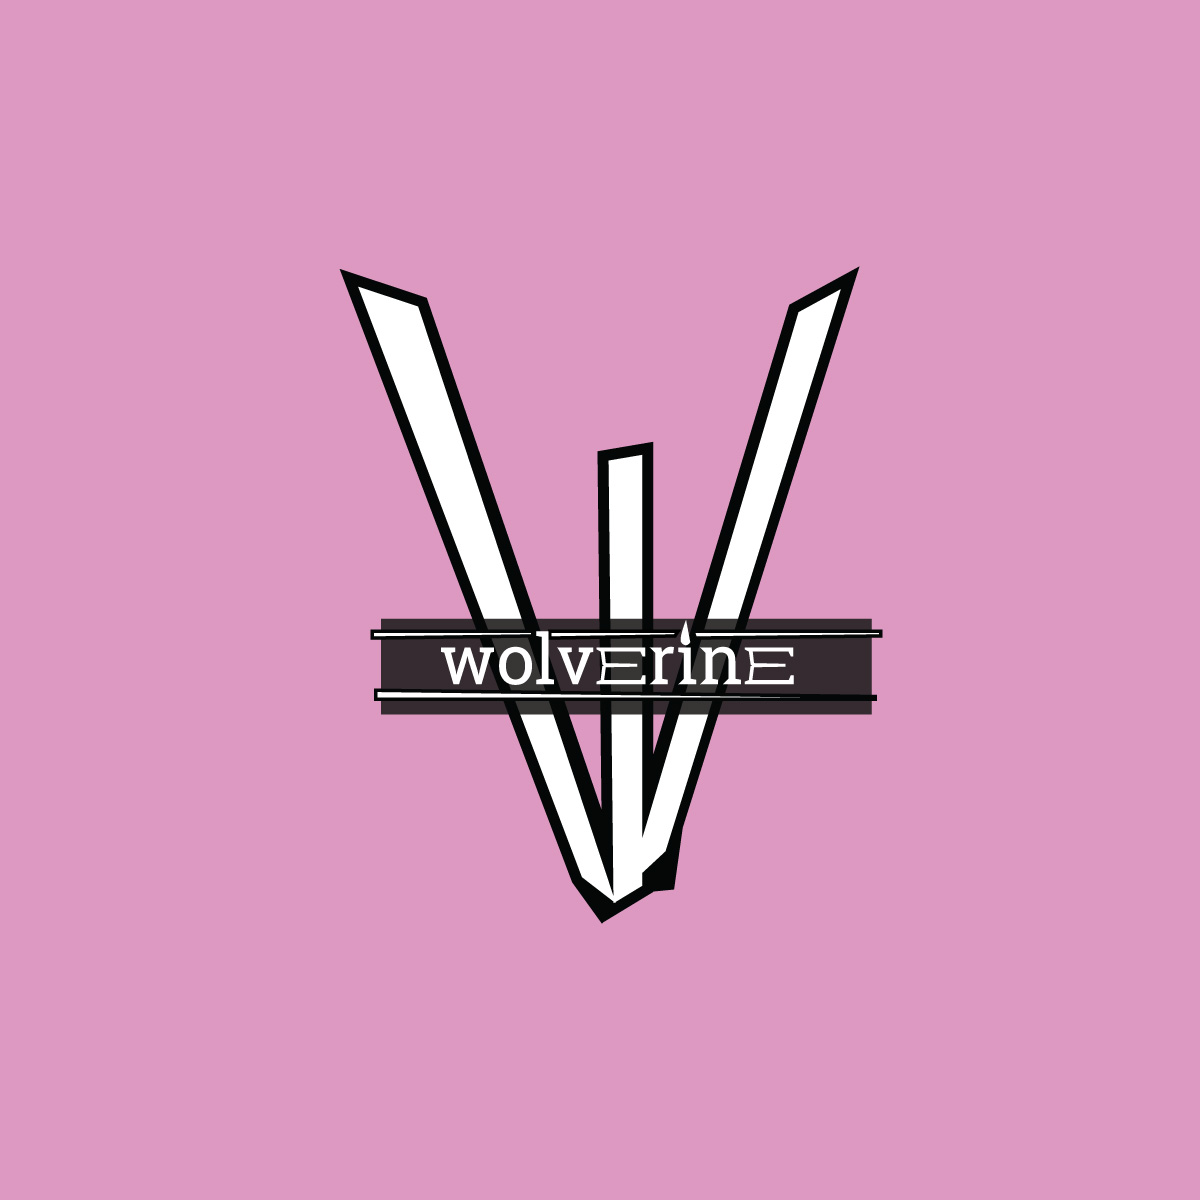 Wolverine typographic logo